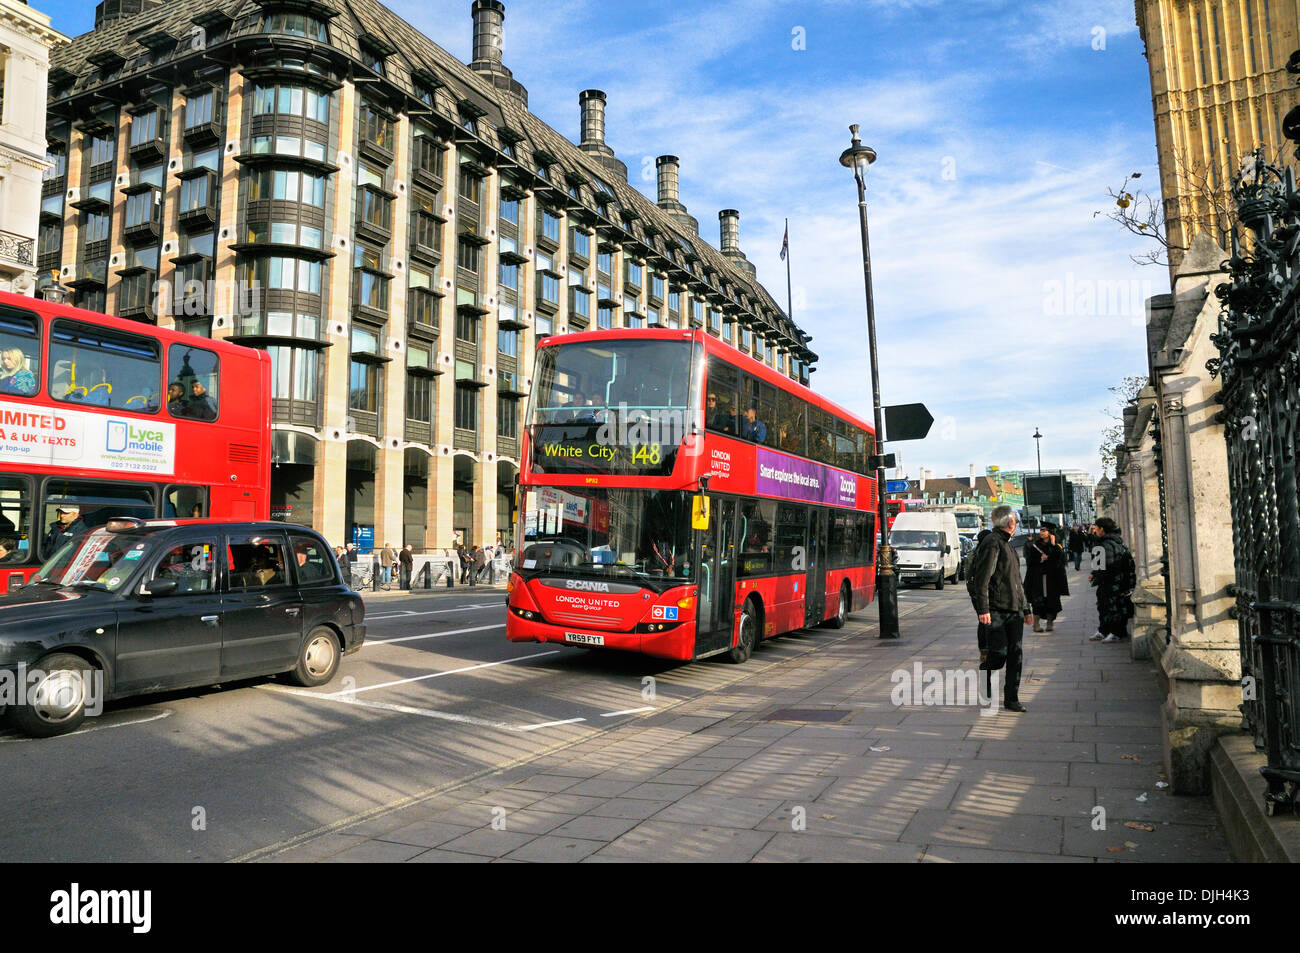 Bus de Londres passant Portcullis House et la station de métro Westminster, City of Westminster, London, England, UK Banque D'Images